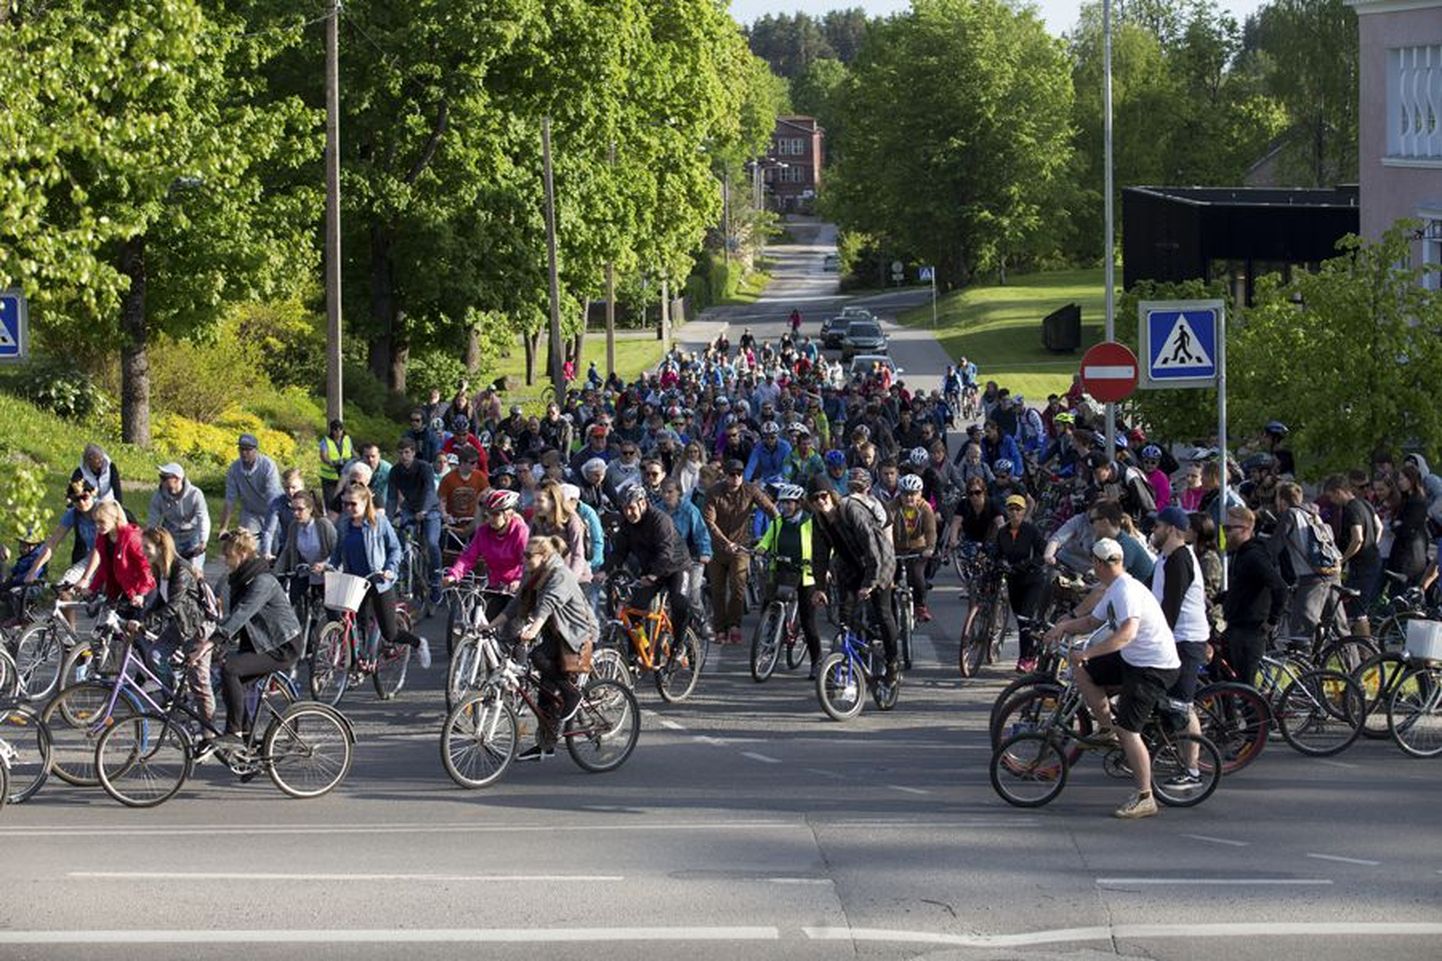 Ühine rattasõit läbi Viljandi tõi kohale ligi 600 ratturit.
Jämejala külas süttis reede õhtul kardetavasti kellegi kurja käe läbi suur puiduhunnik.